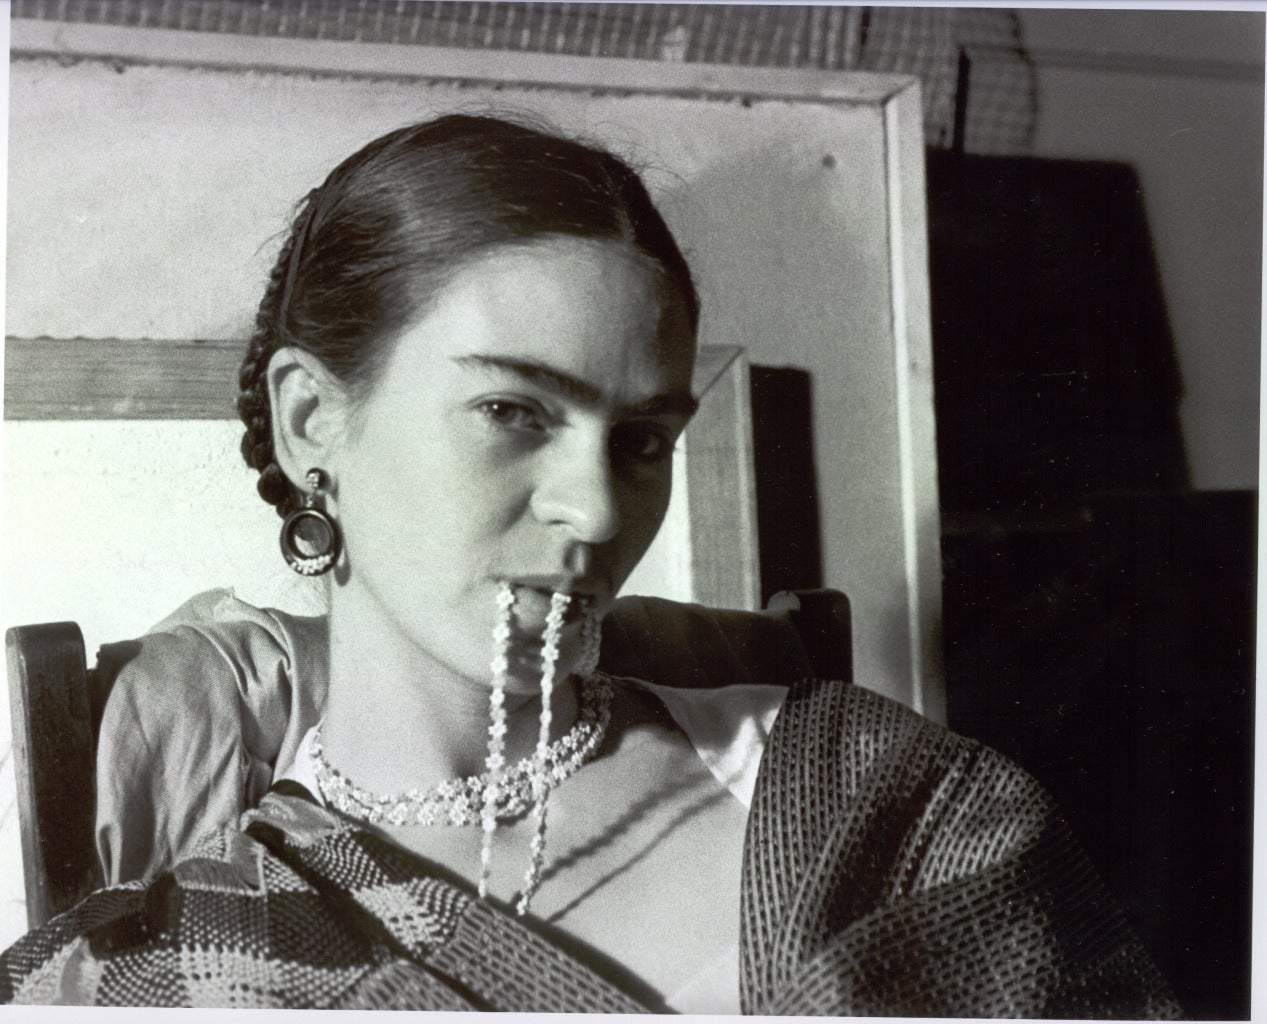 Frida Biting Her Necklace von Lucienne Bloch ist ein 8 1/4 x 10 1/4 Zoll großer Silbergelatineabzug. Dieses Foto ist auf einem 16 x 20 Zoll großen Passepartoutkarton mit einer Fenstermatte montiert. Es ist auf der Vorderseite vom Künstler mit Feder